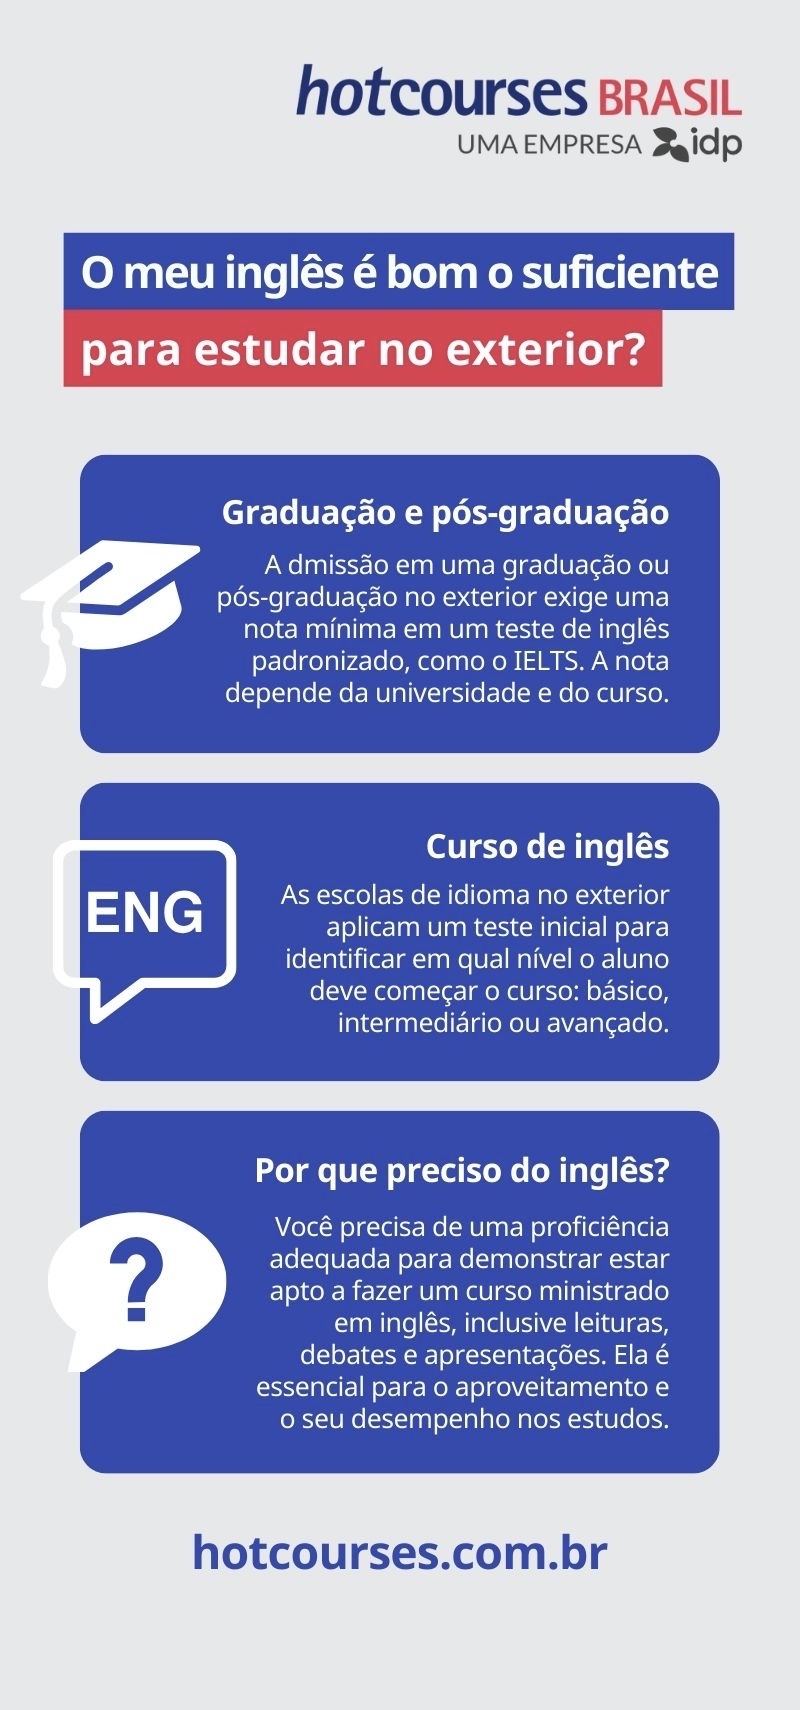 Faculdade Unibras Pará, o que significa a sigla mf em ingles